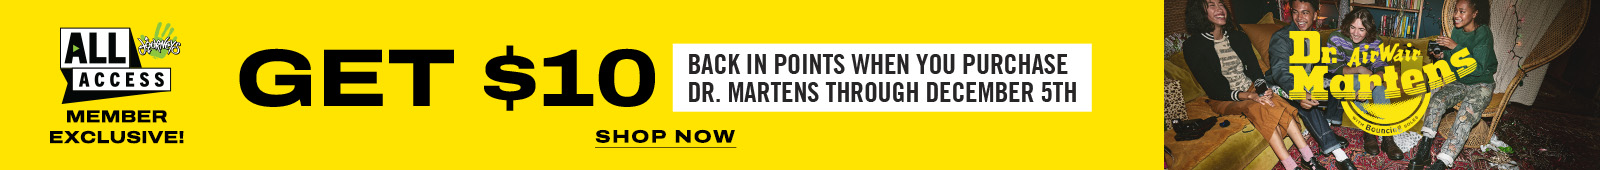 Get $10 Back in Points on Dr. Martens - See Details